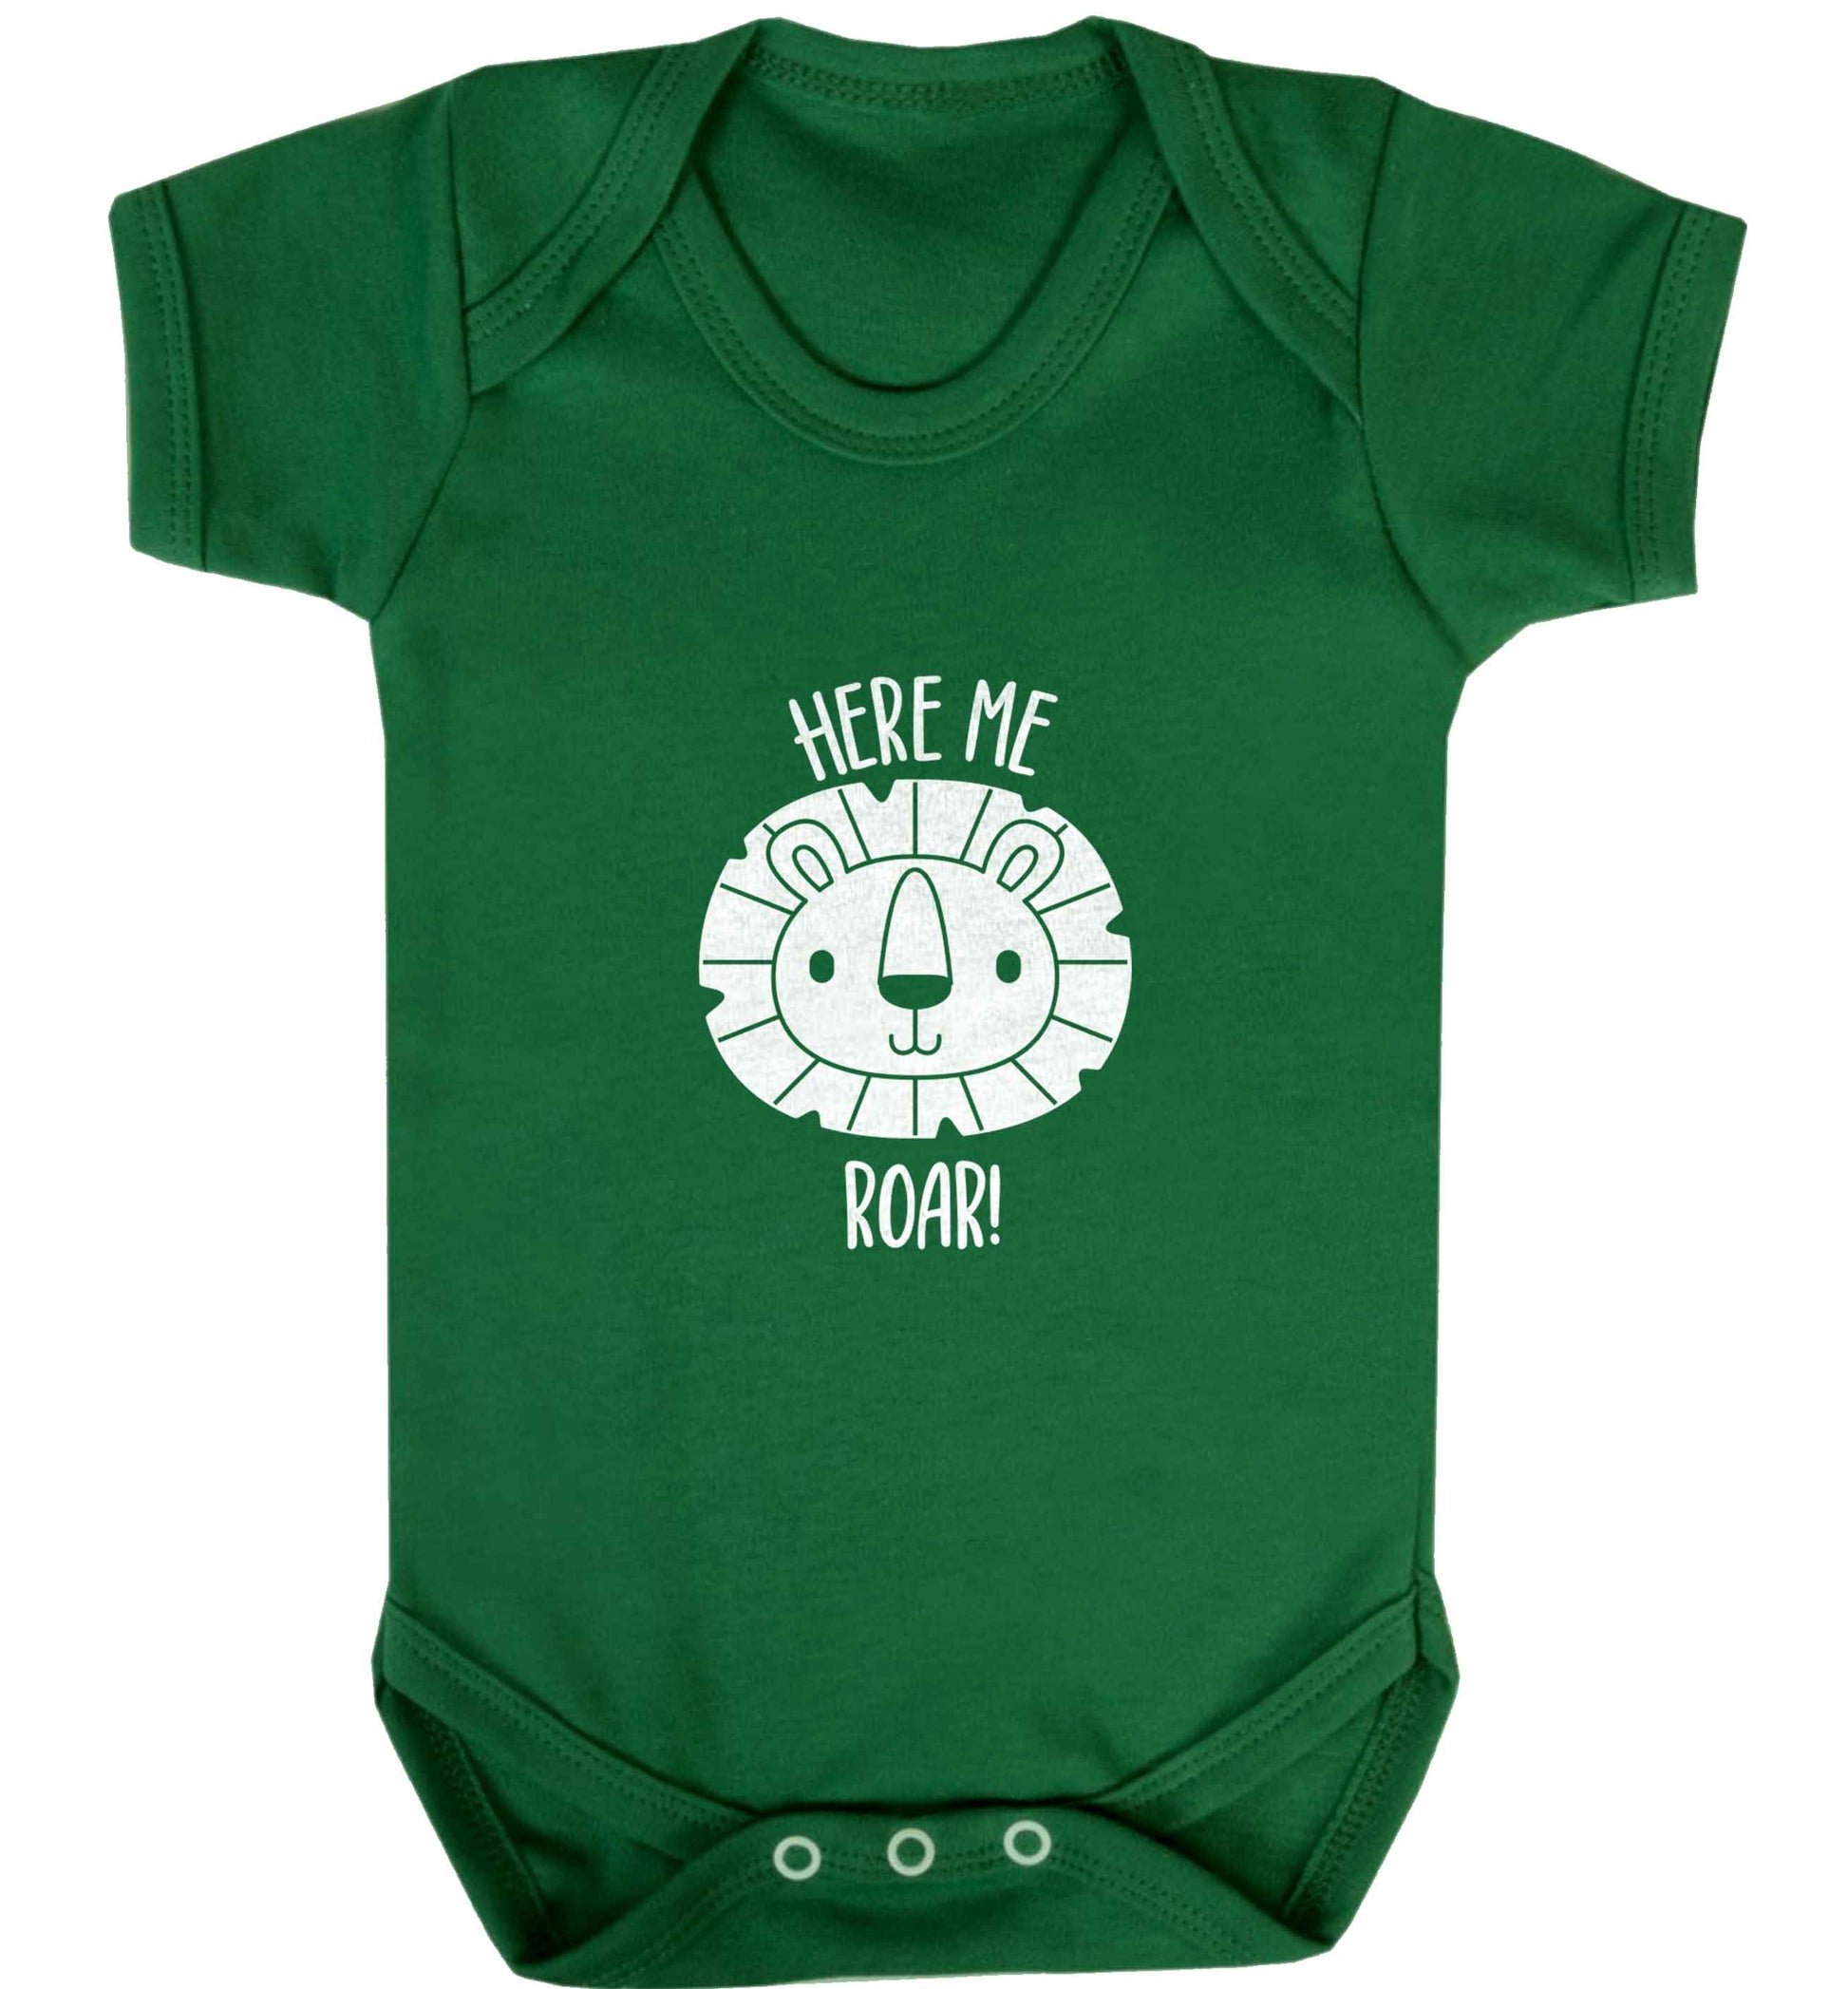 Hear me roar baby vest green 18-24 months